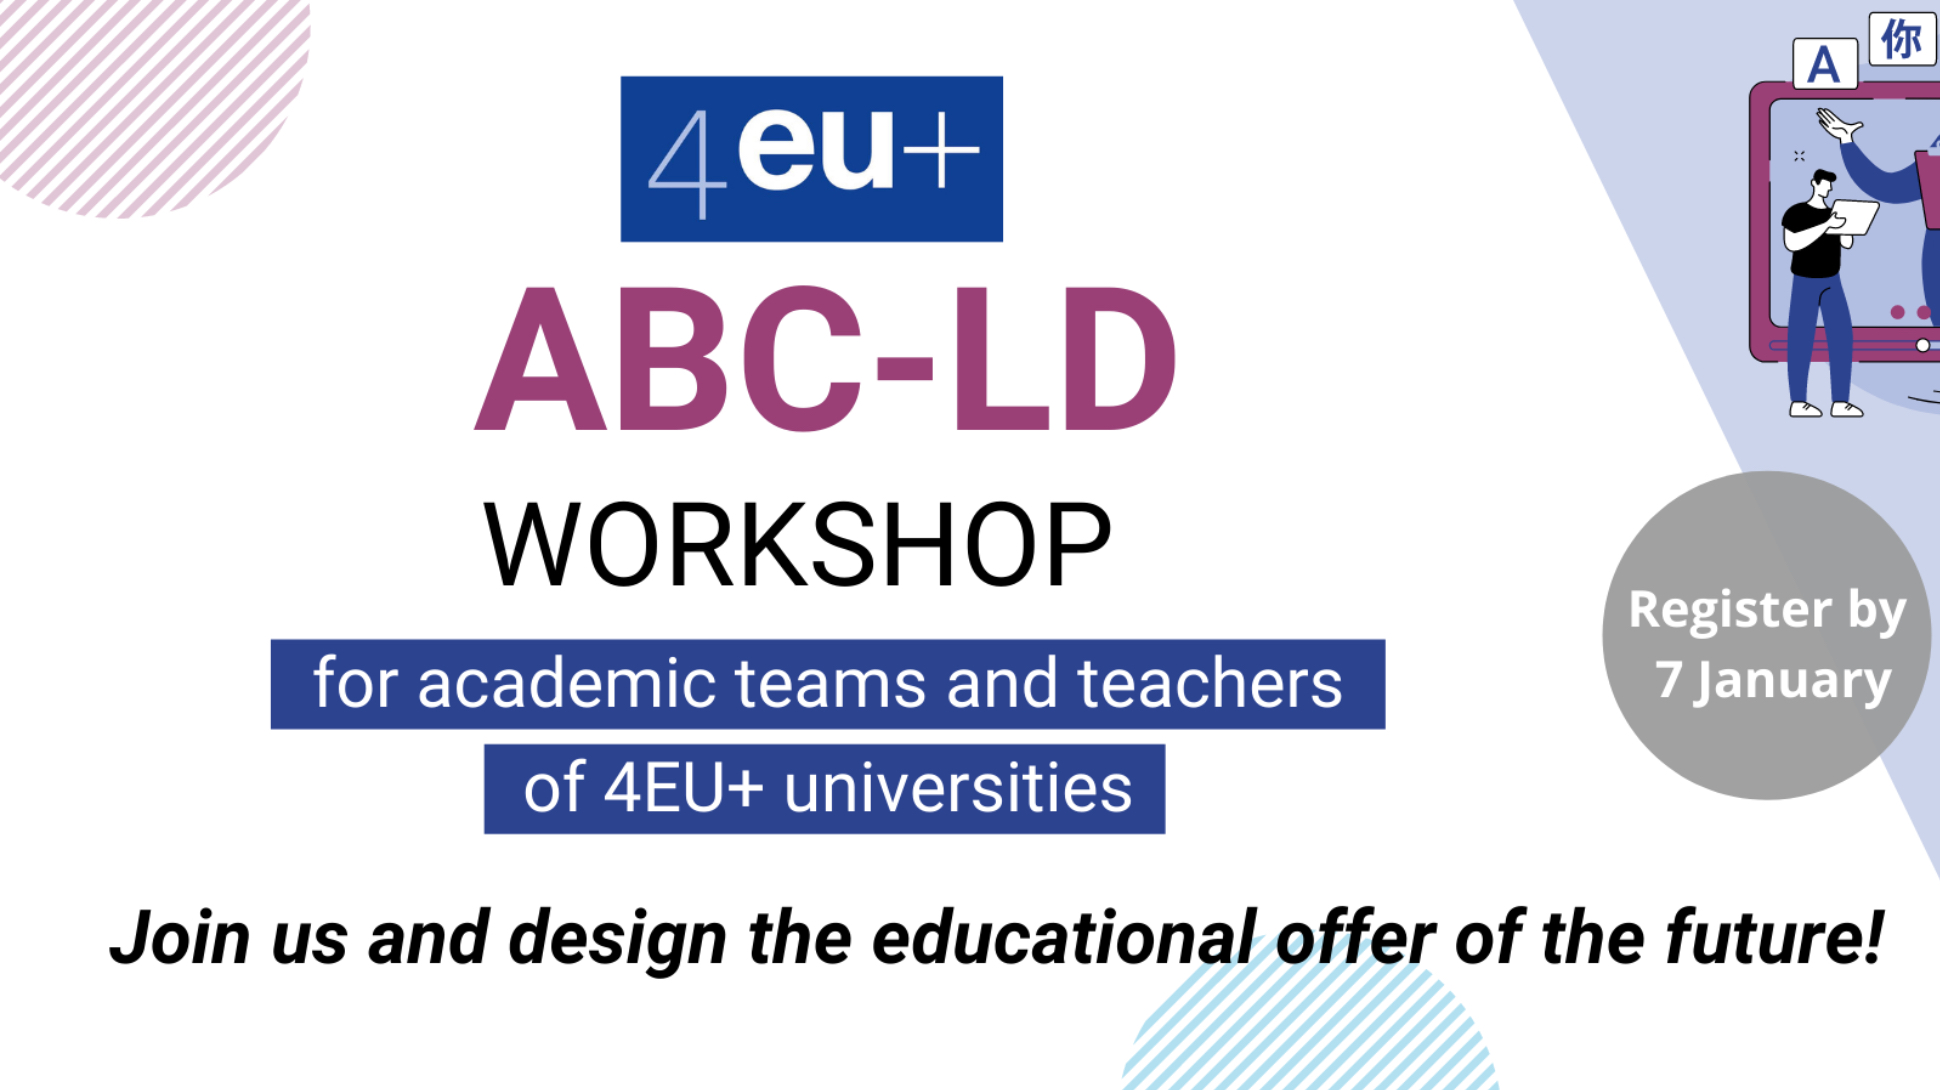 ABC-LD workshop for academic teams and teachers of 4EU+